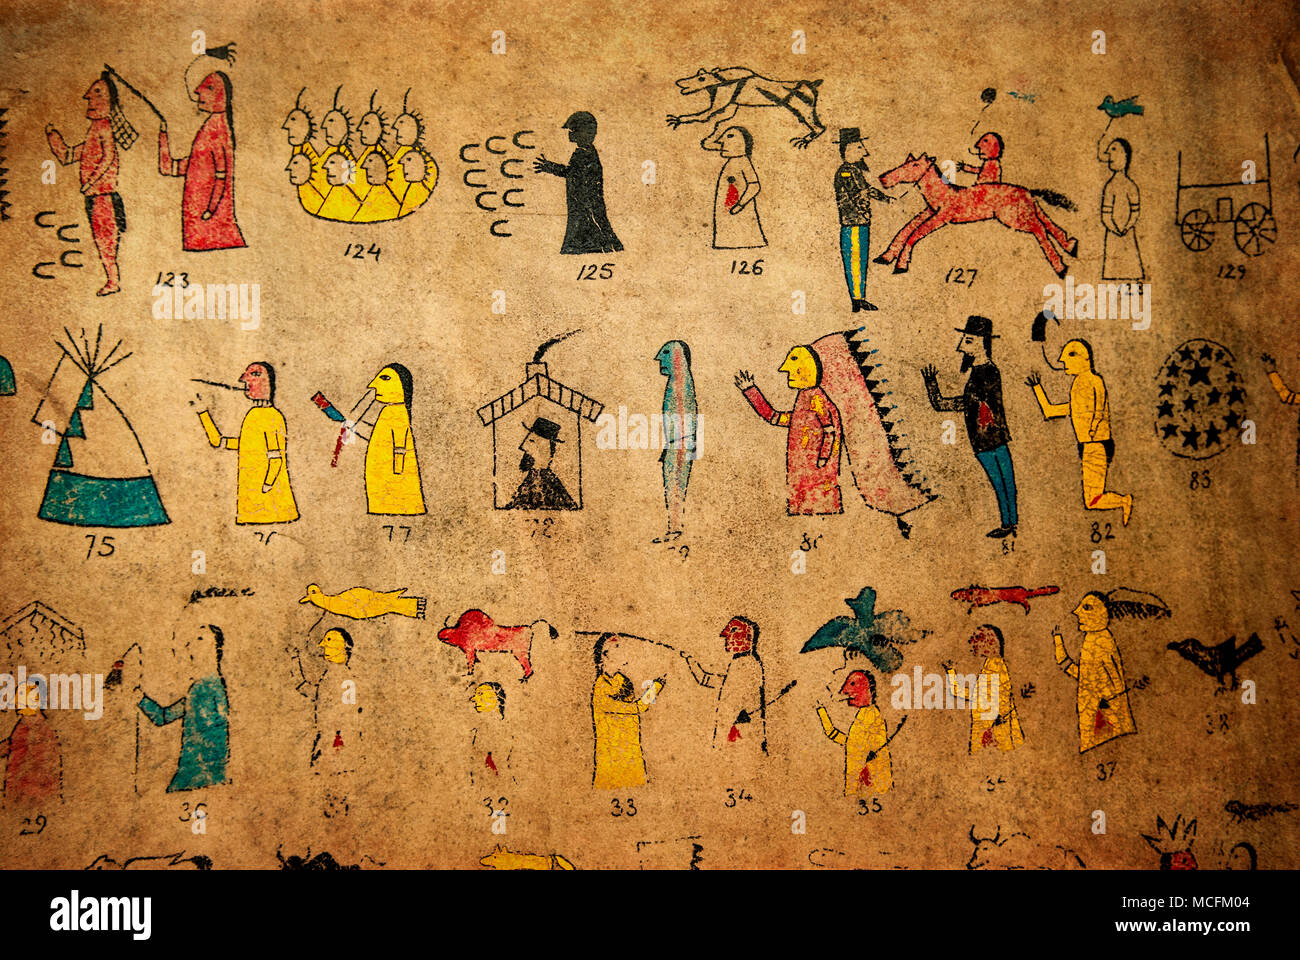 Polen - SPYTKOWO - INDIAN MUSEUM - ca. Mai 2013 - Reproduktion eines alten indischen Schreiben Kalender auf Rindsleder. Stockfoto